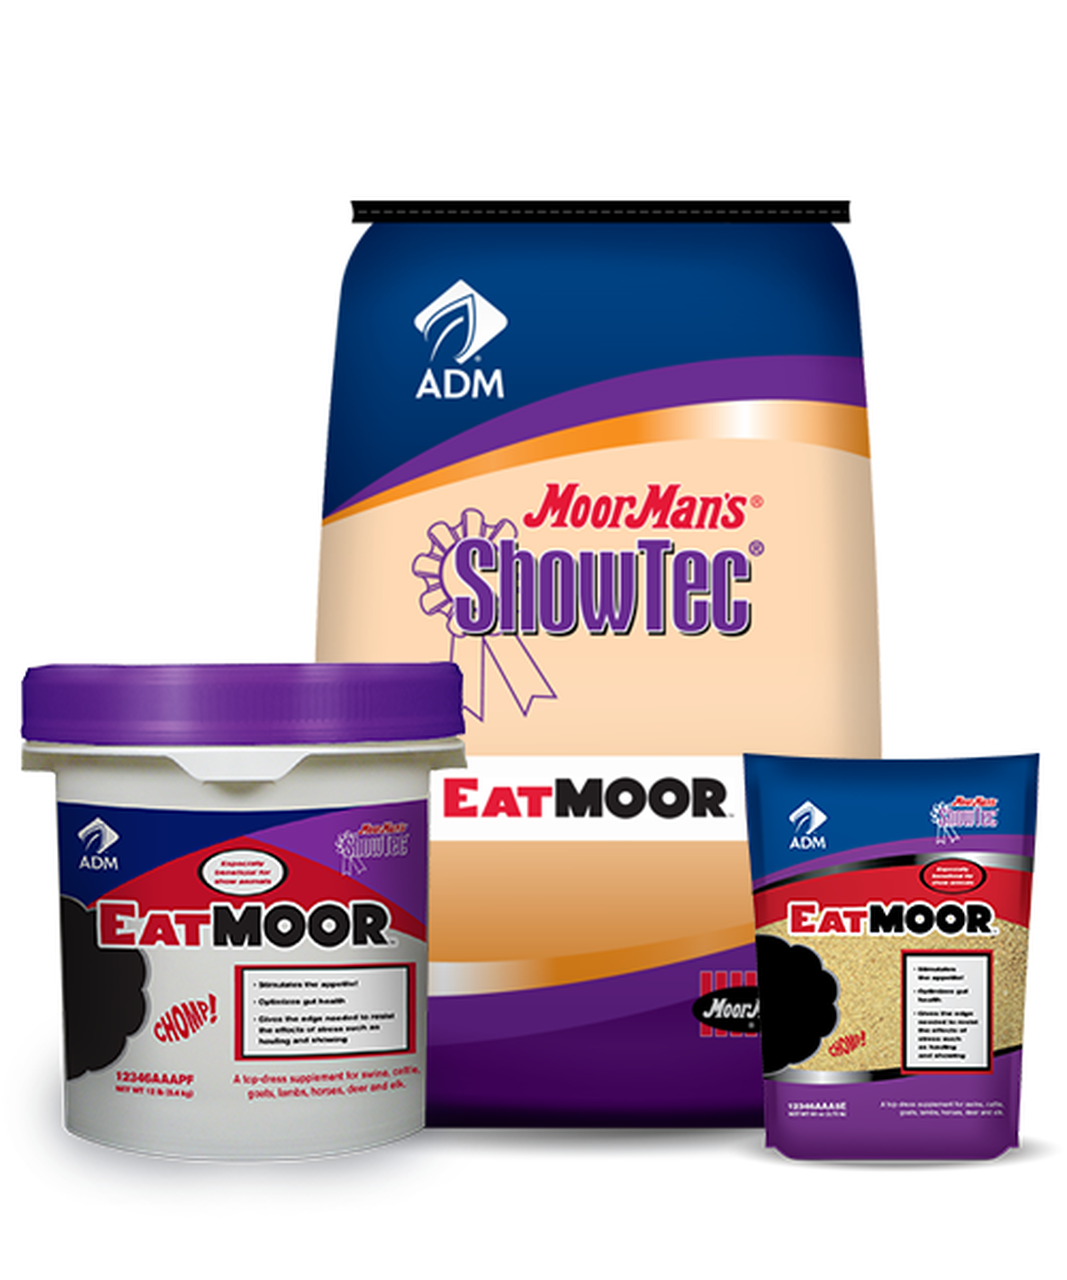 MOORMAN’S® SHOWTEC® EATMOOR™ (4 lb,12lb and 44lb bags)